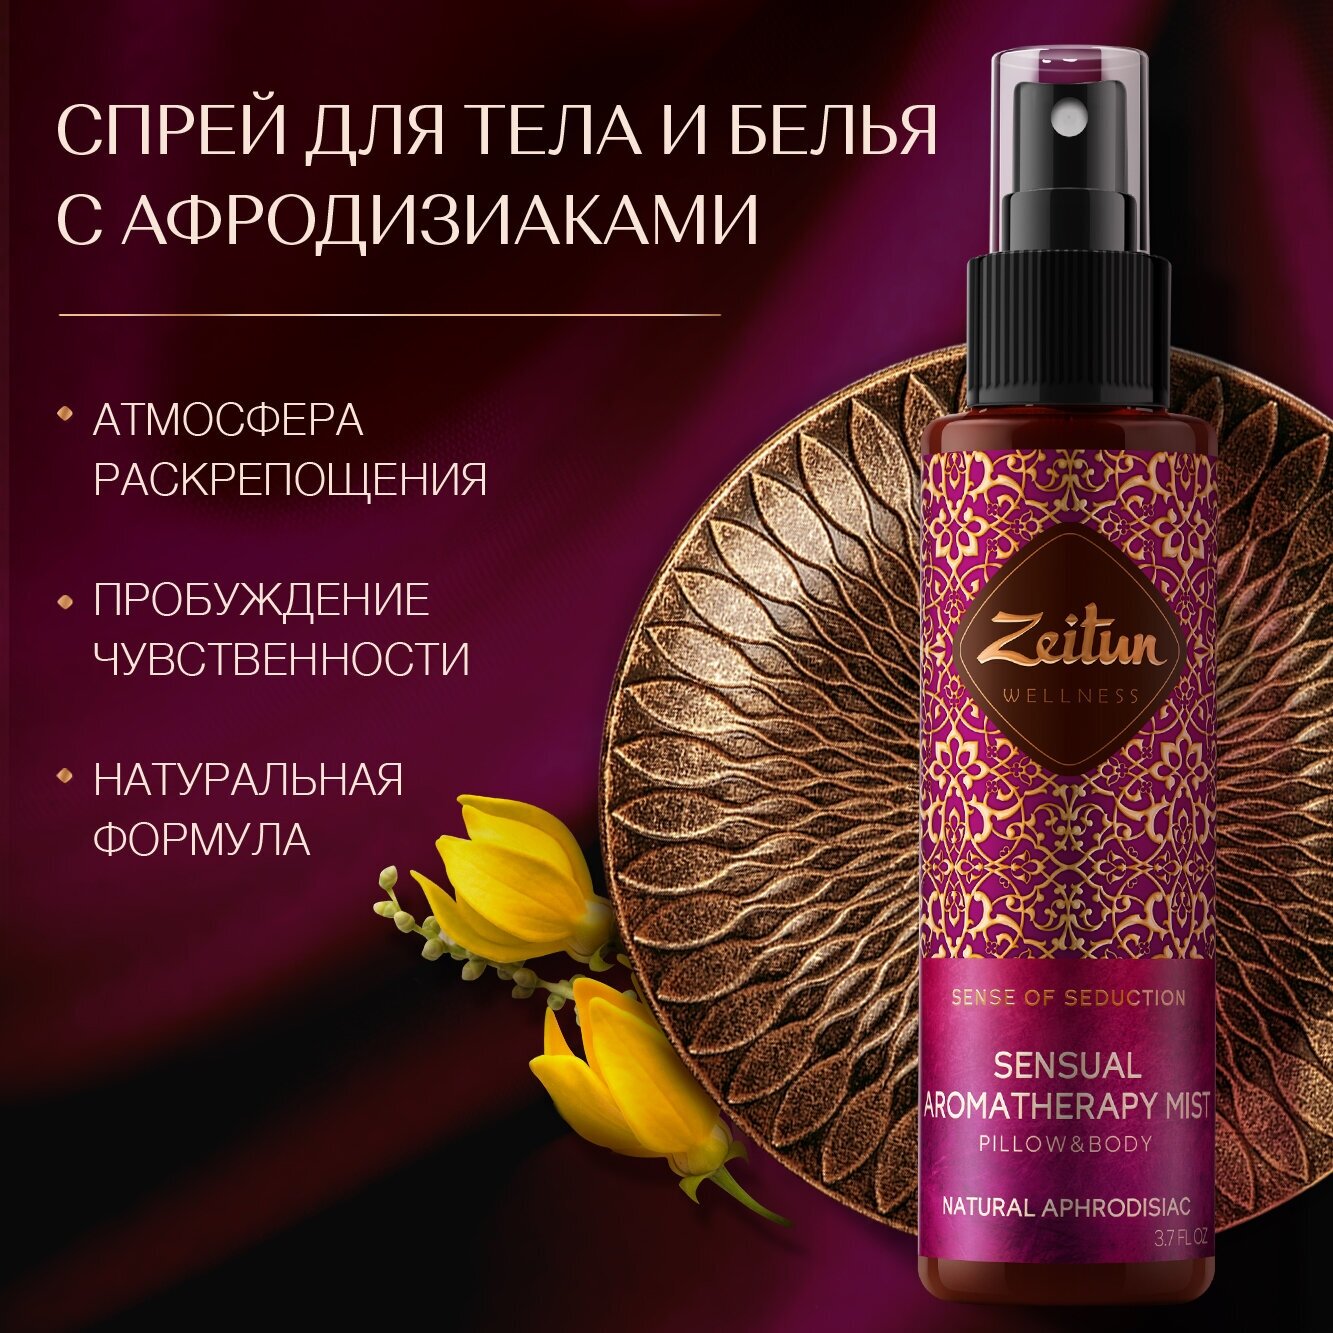 ZEITUN Чувственный ароматический спрей-мист для тела и белья "Ритуал соблазна" парфюмированный, с натуральным афродизиаком, 110 мл